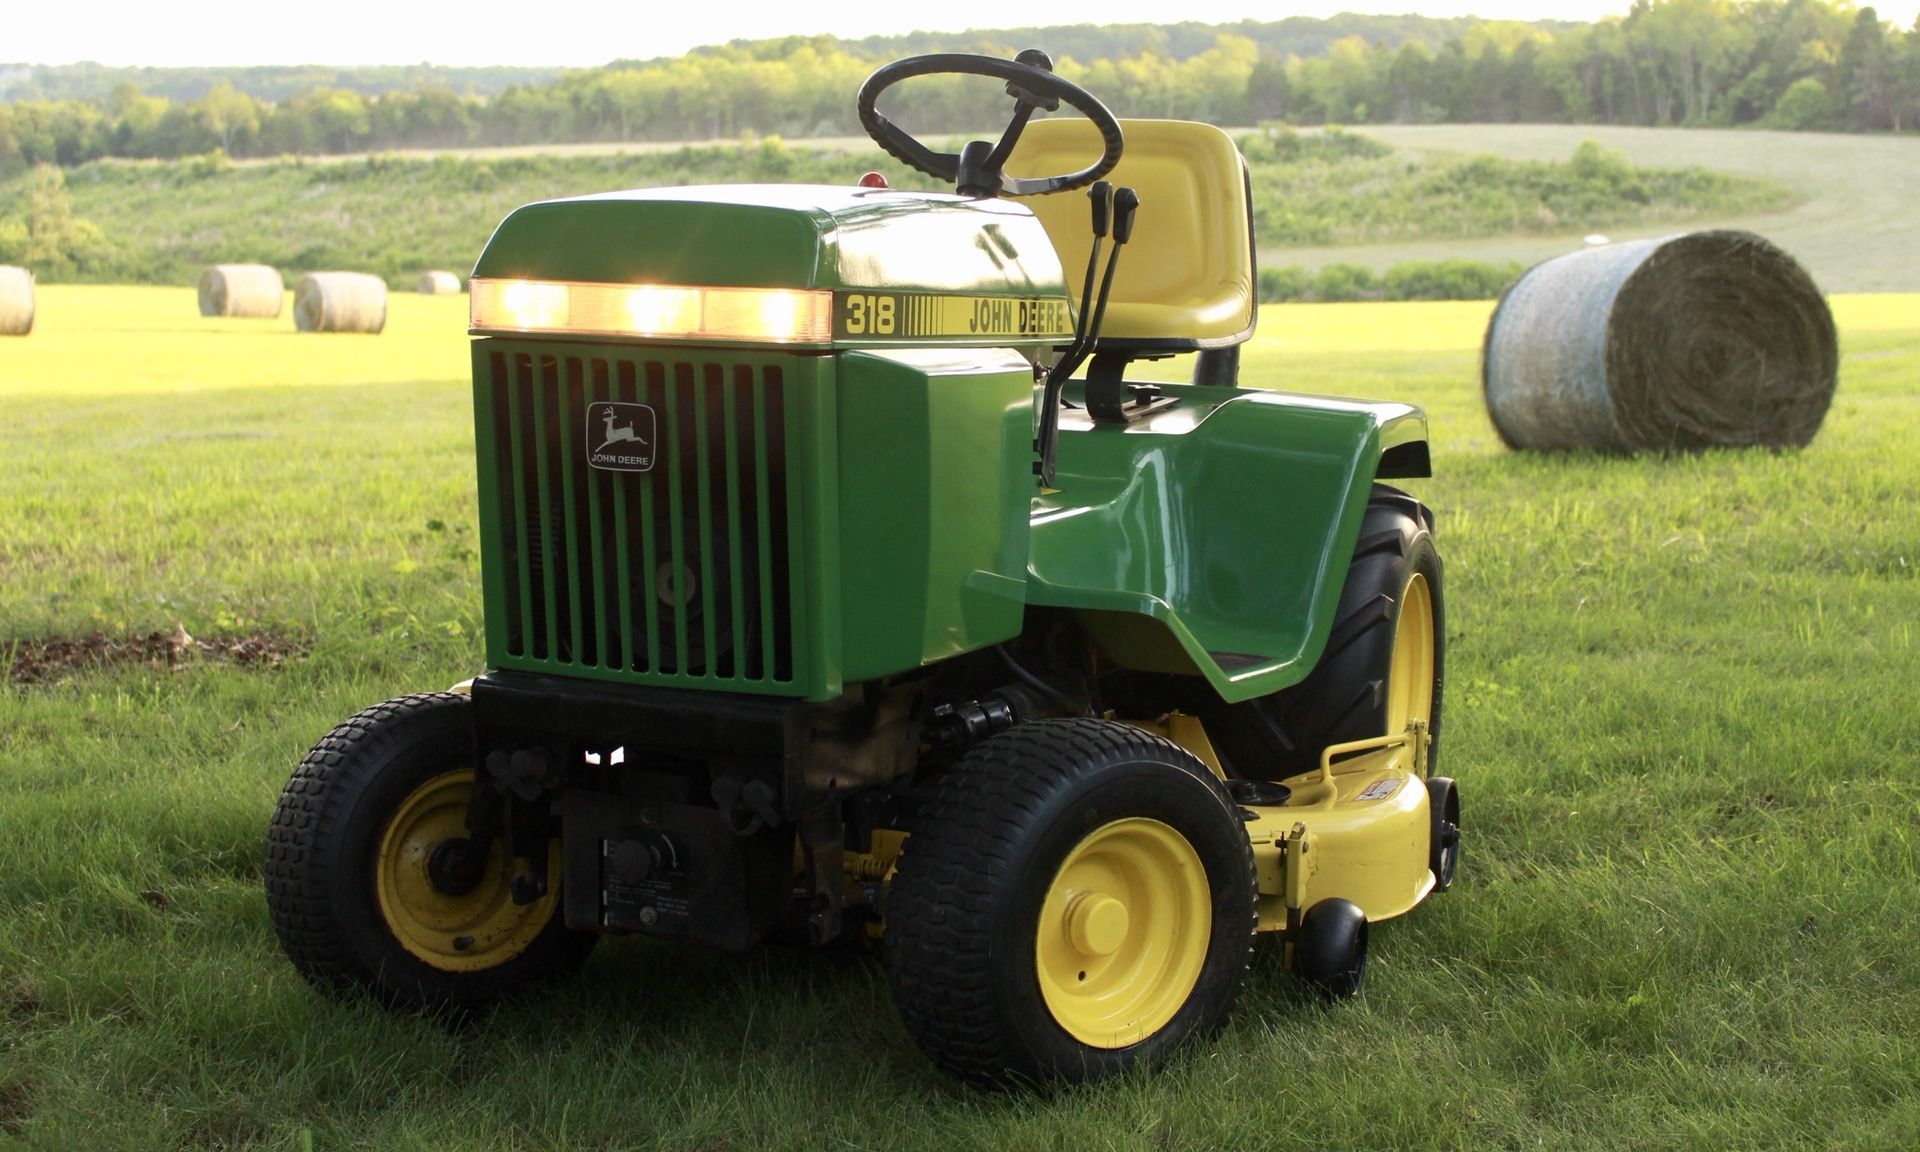 John Deere 318 garden tractor with 50 inch mower deck